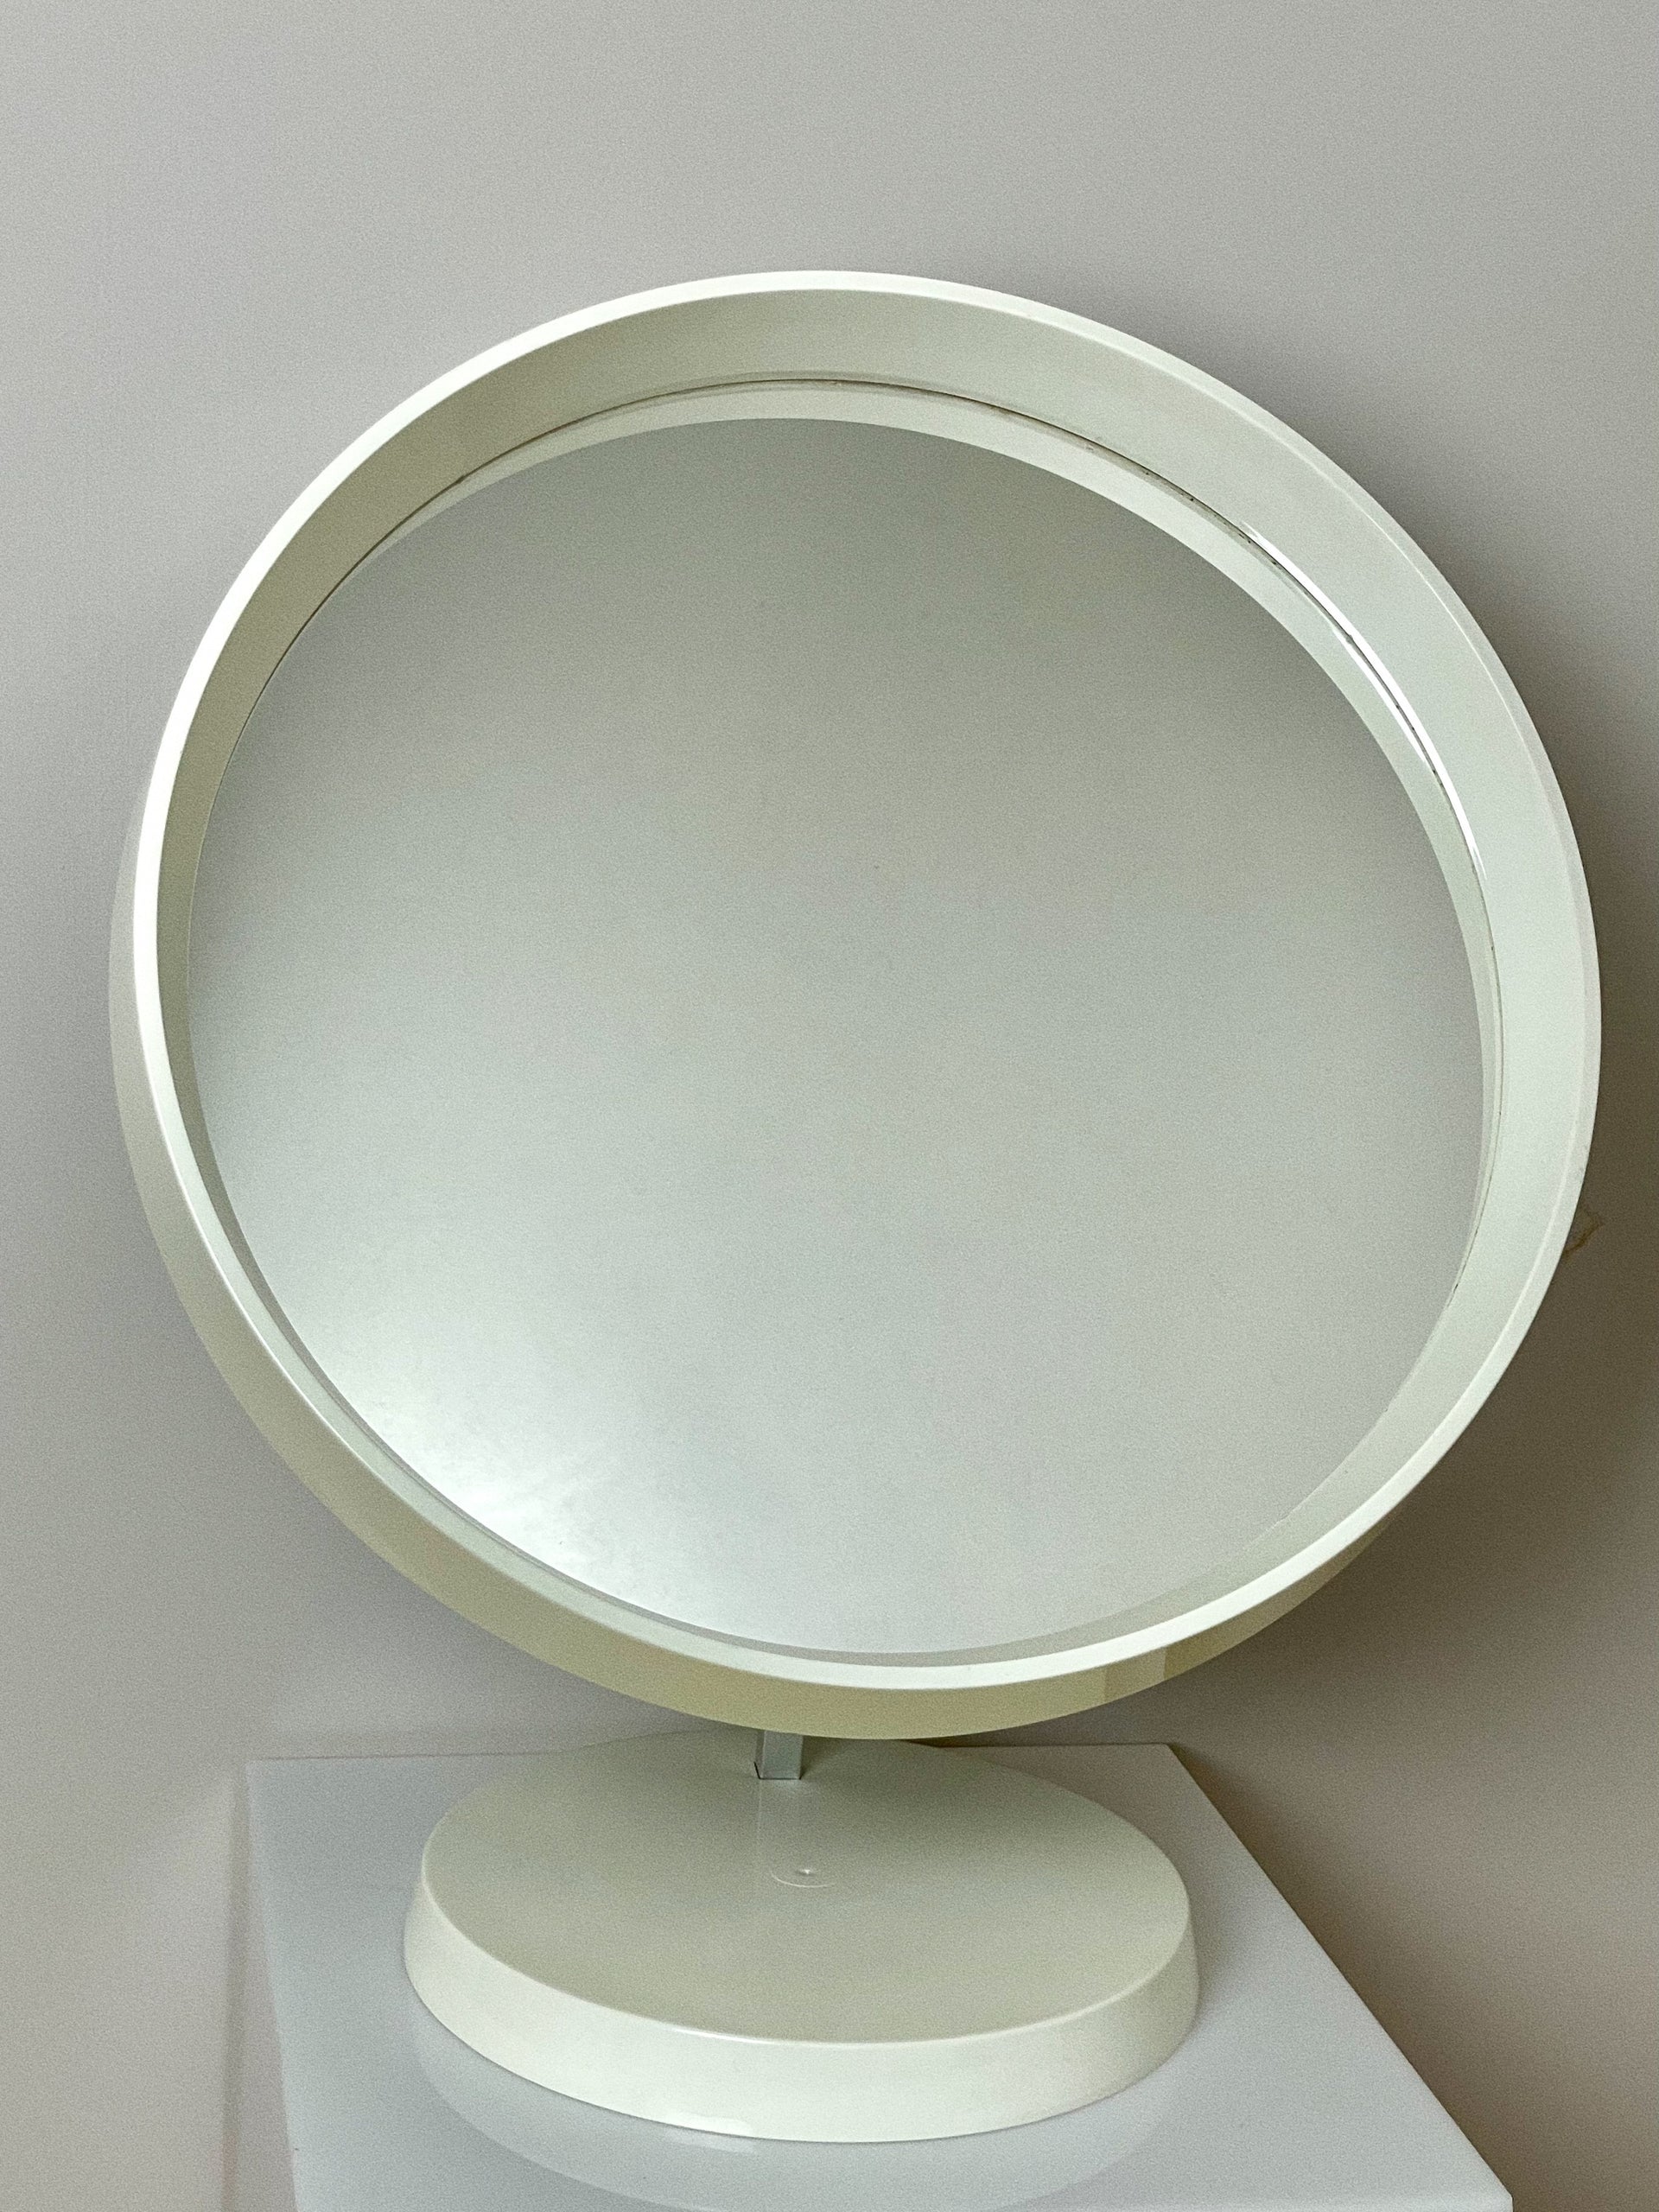 Danish mid century table mirror